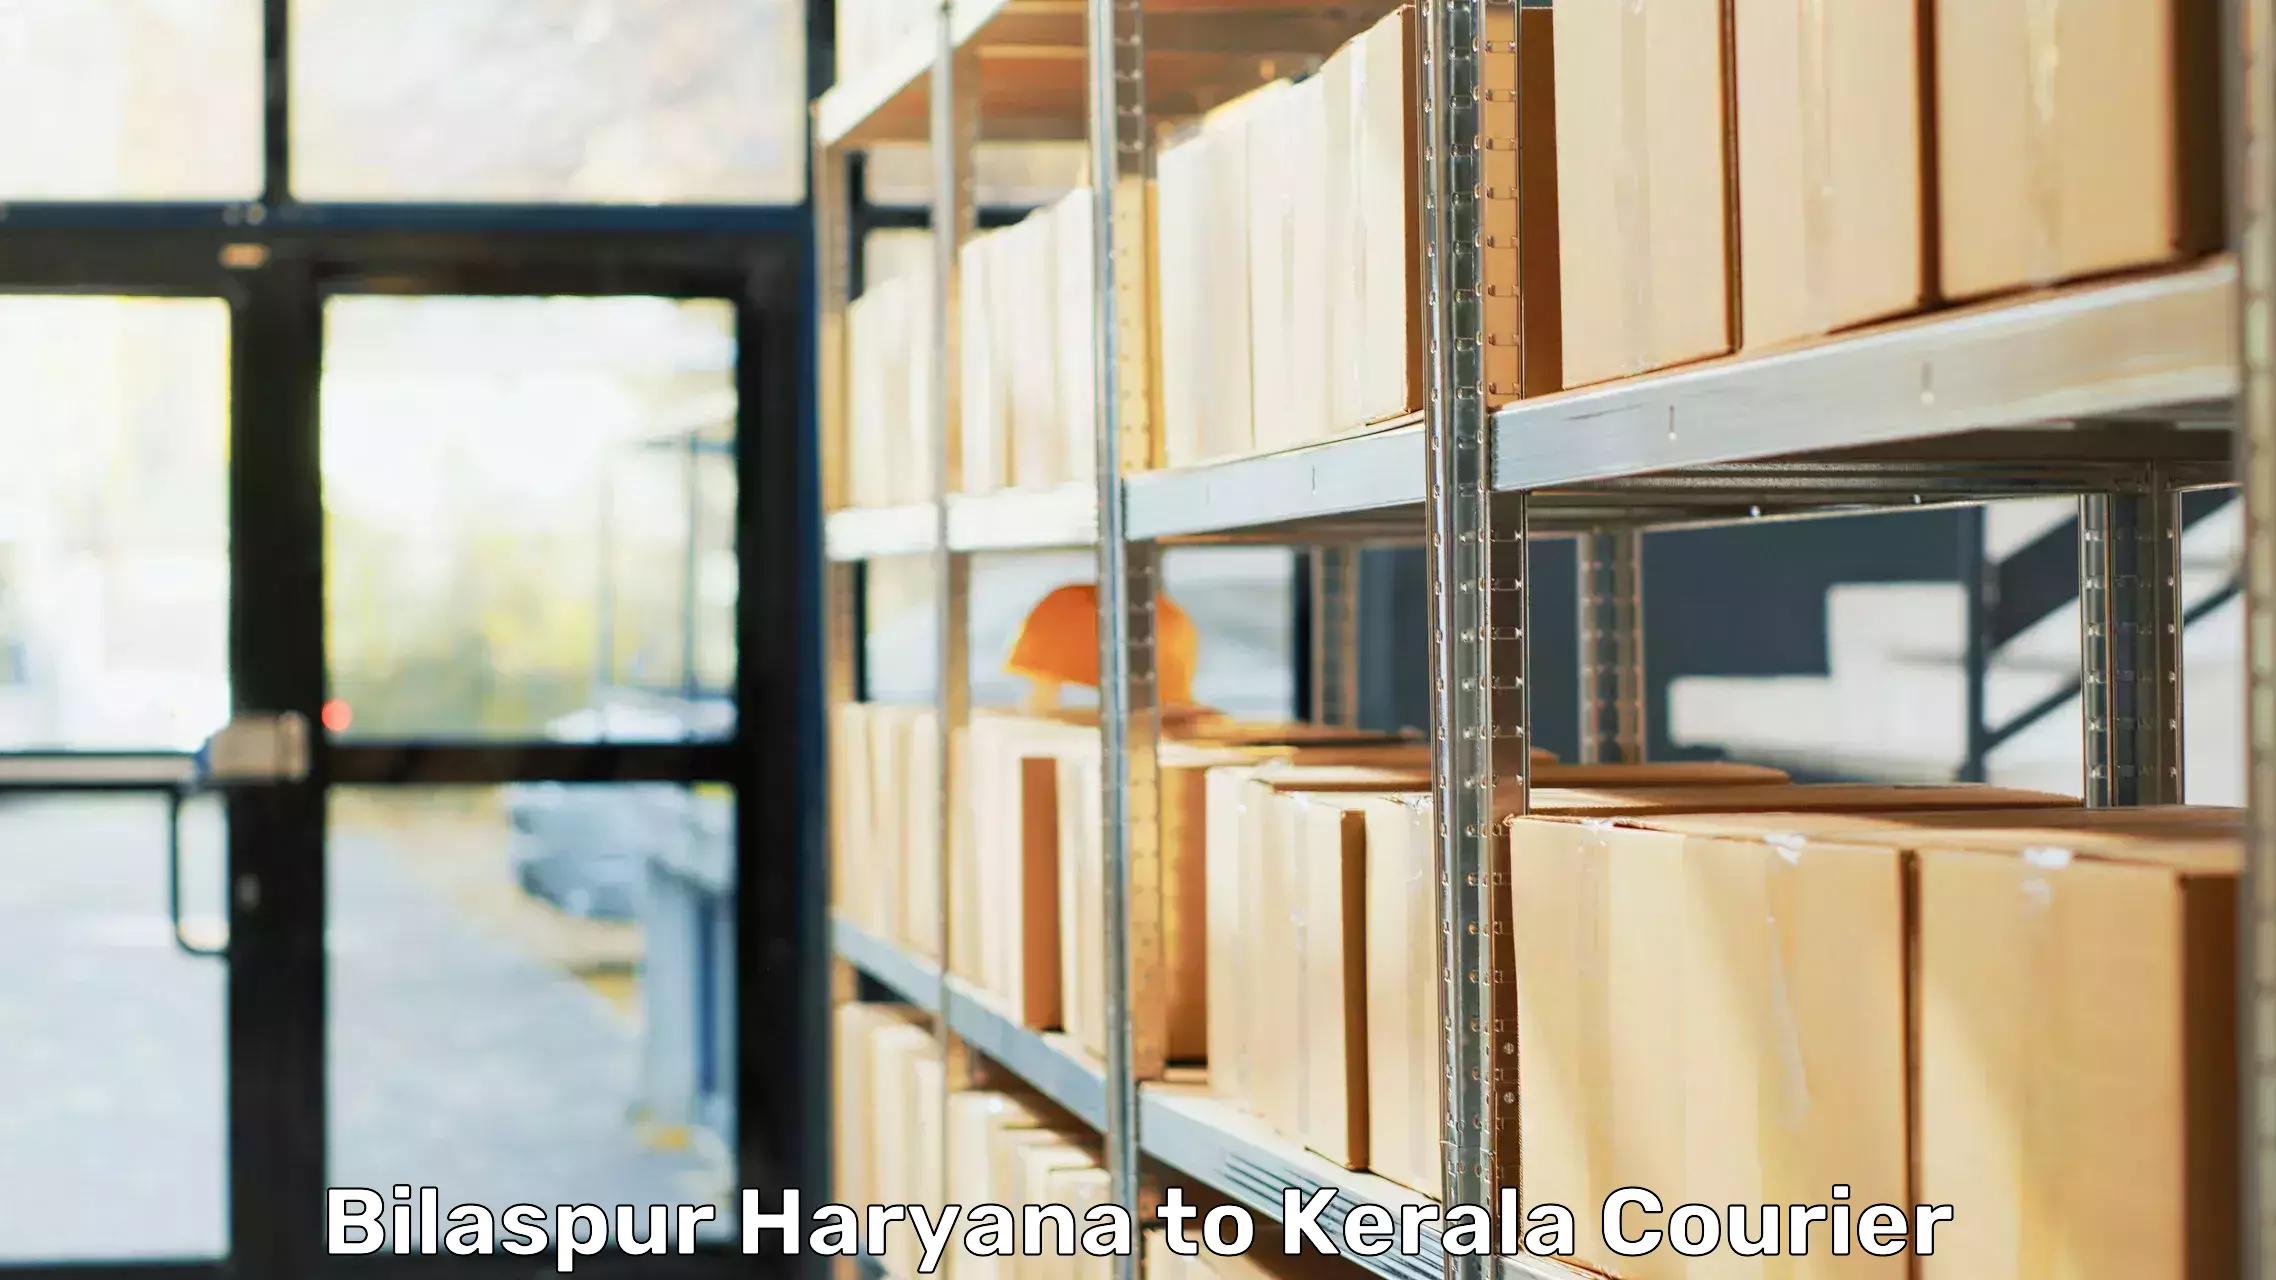 Furniture moving experts Bilaspur Haryana to Tirurangadi